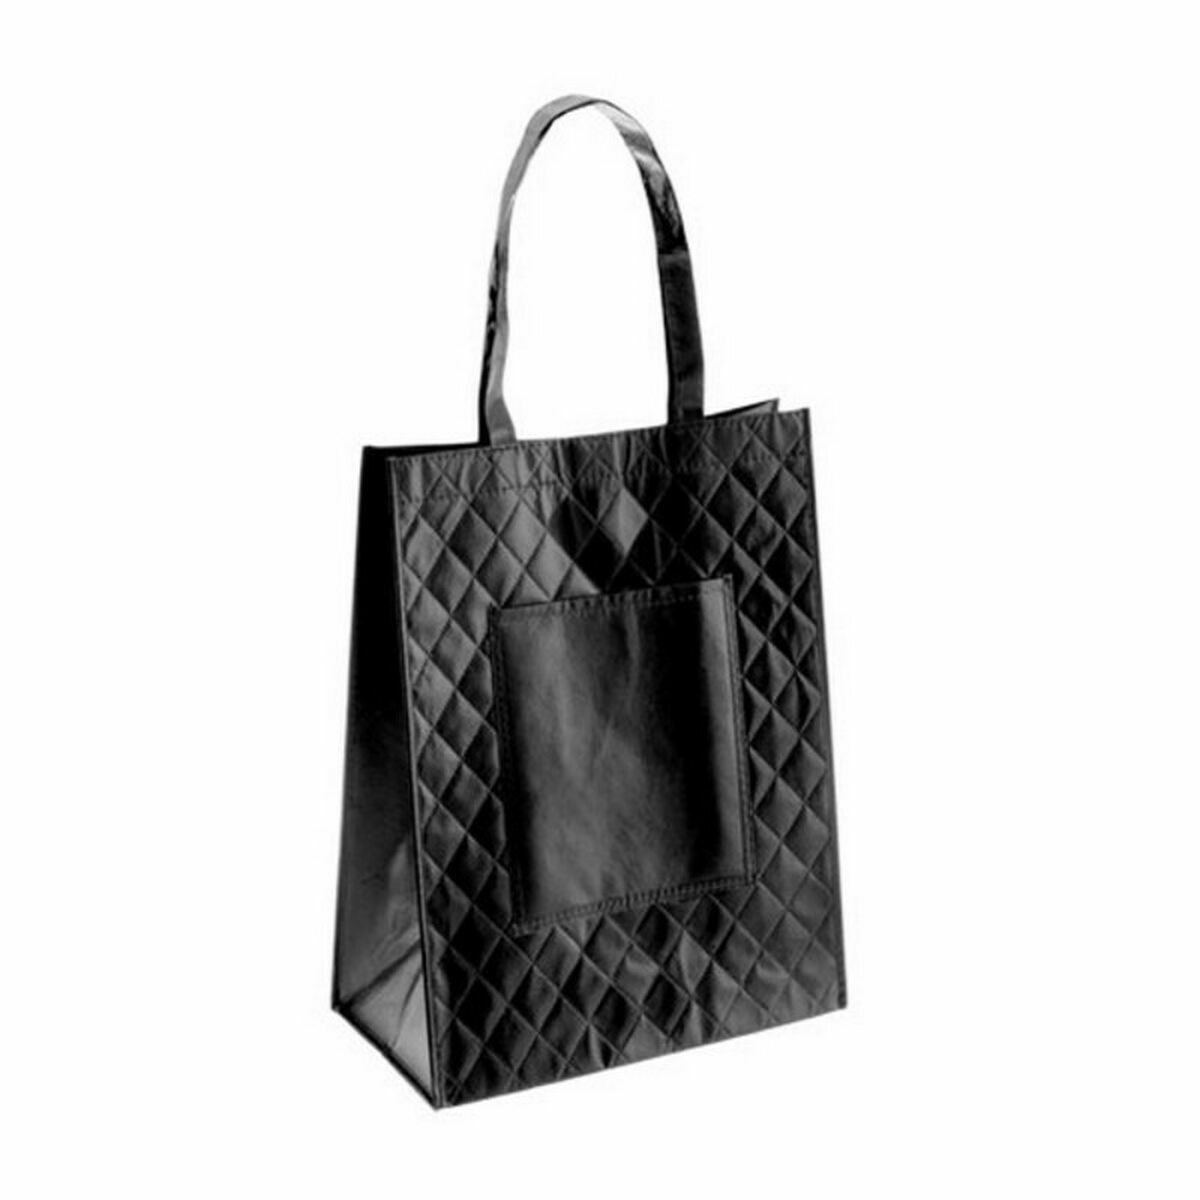 Shopping Bag 144519 (10 Unità)